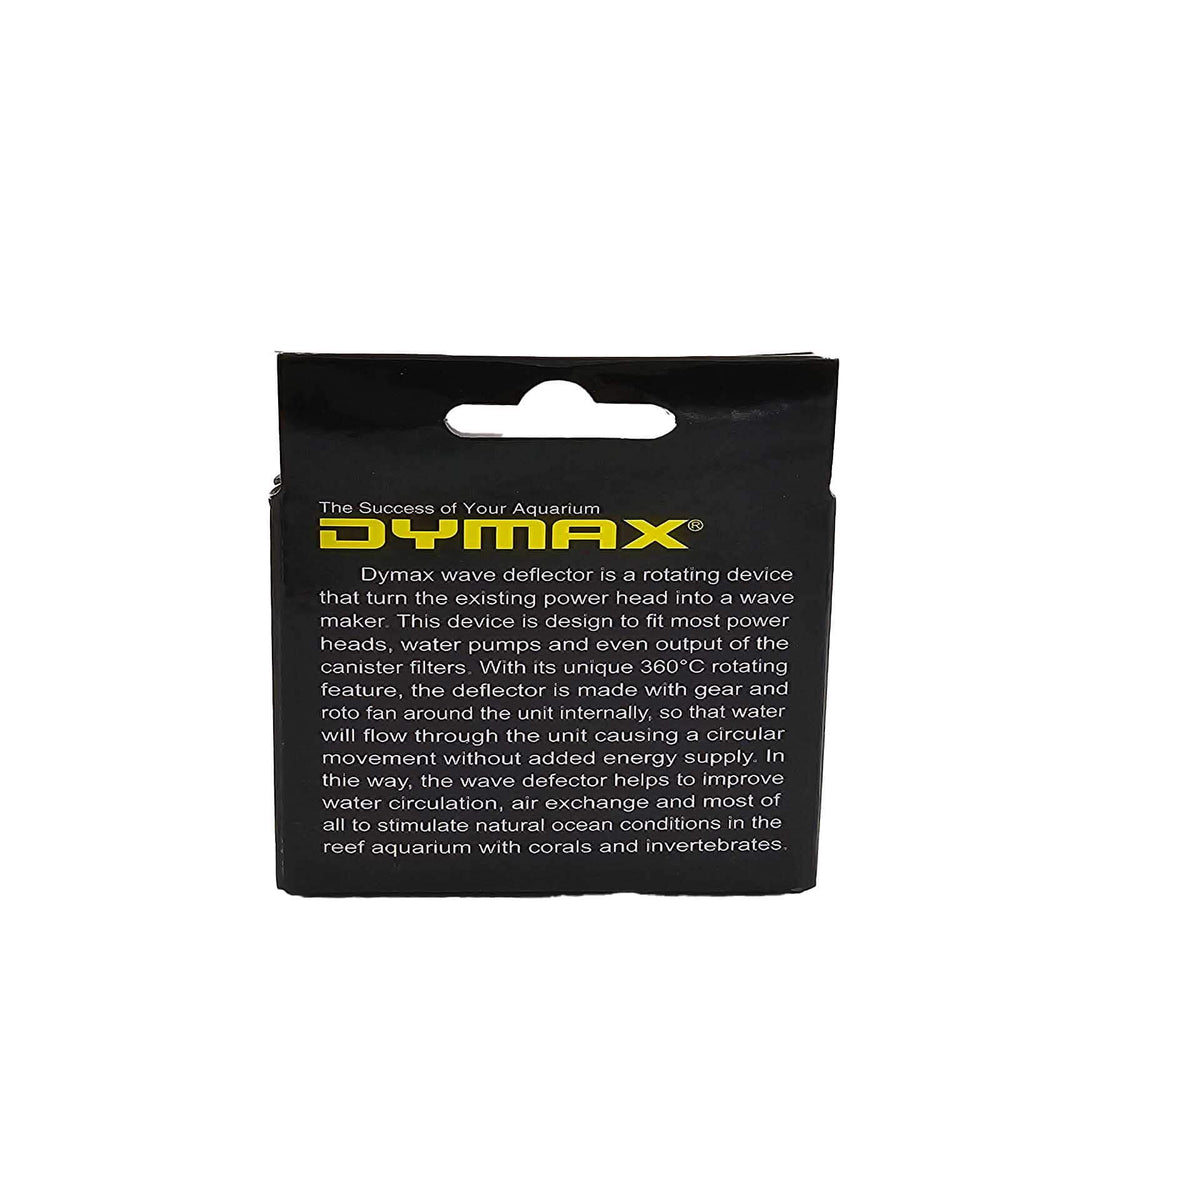 Dymax Wave Deflector - Improves water circulation